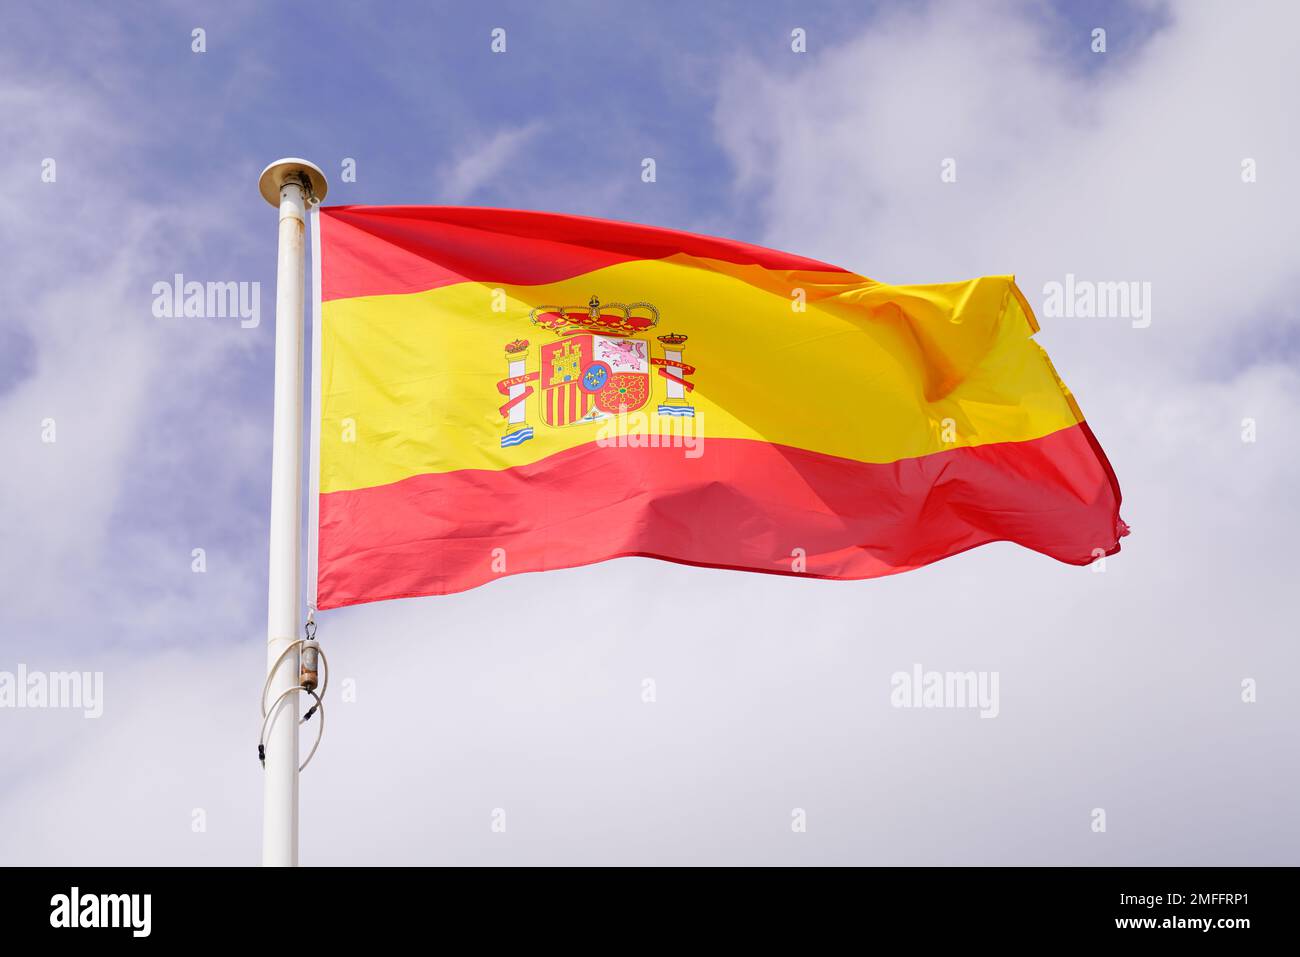 espagne drapeau espagnol vague sur un ciel nuageux Banque D'Images